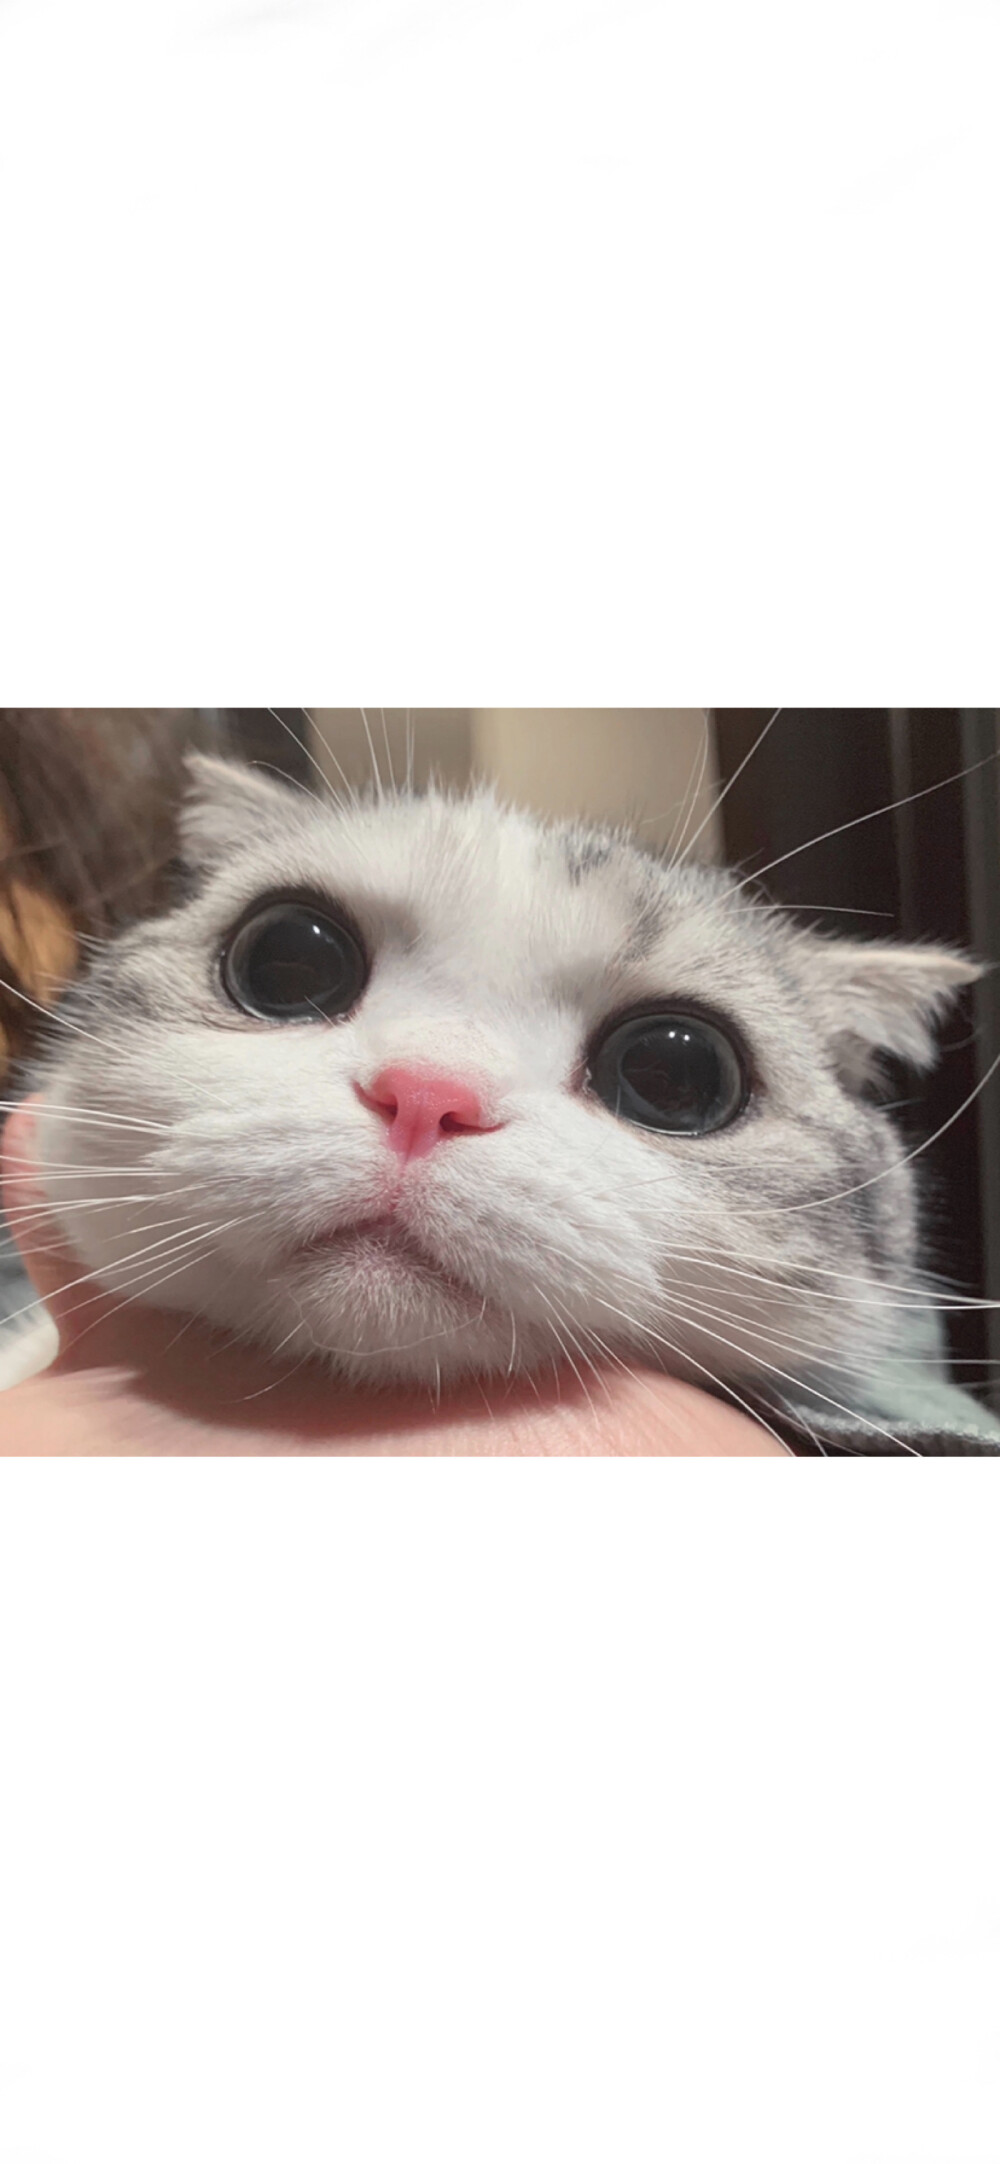 小猫咪王泡芙的图片图片